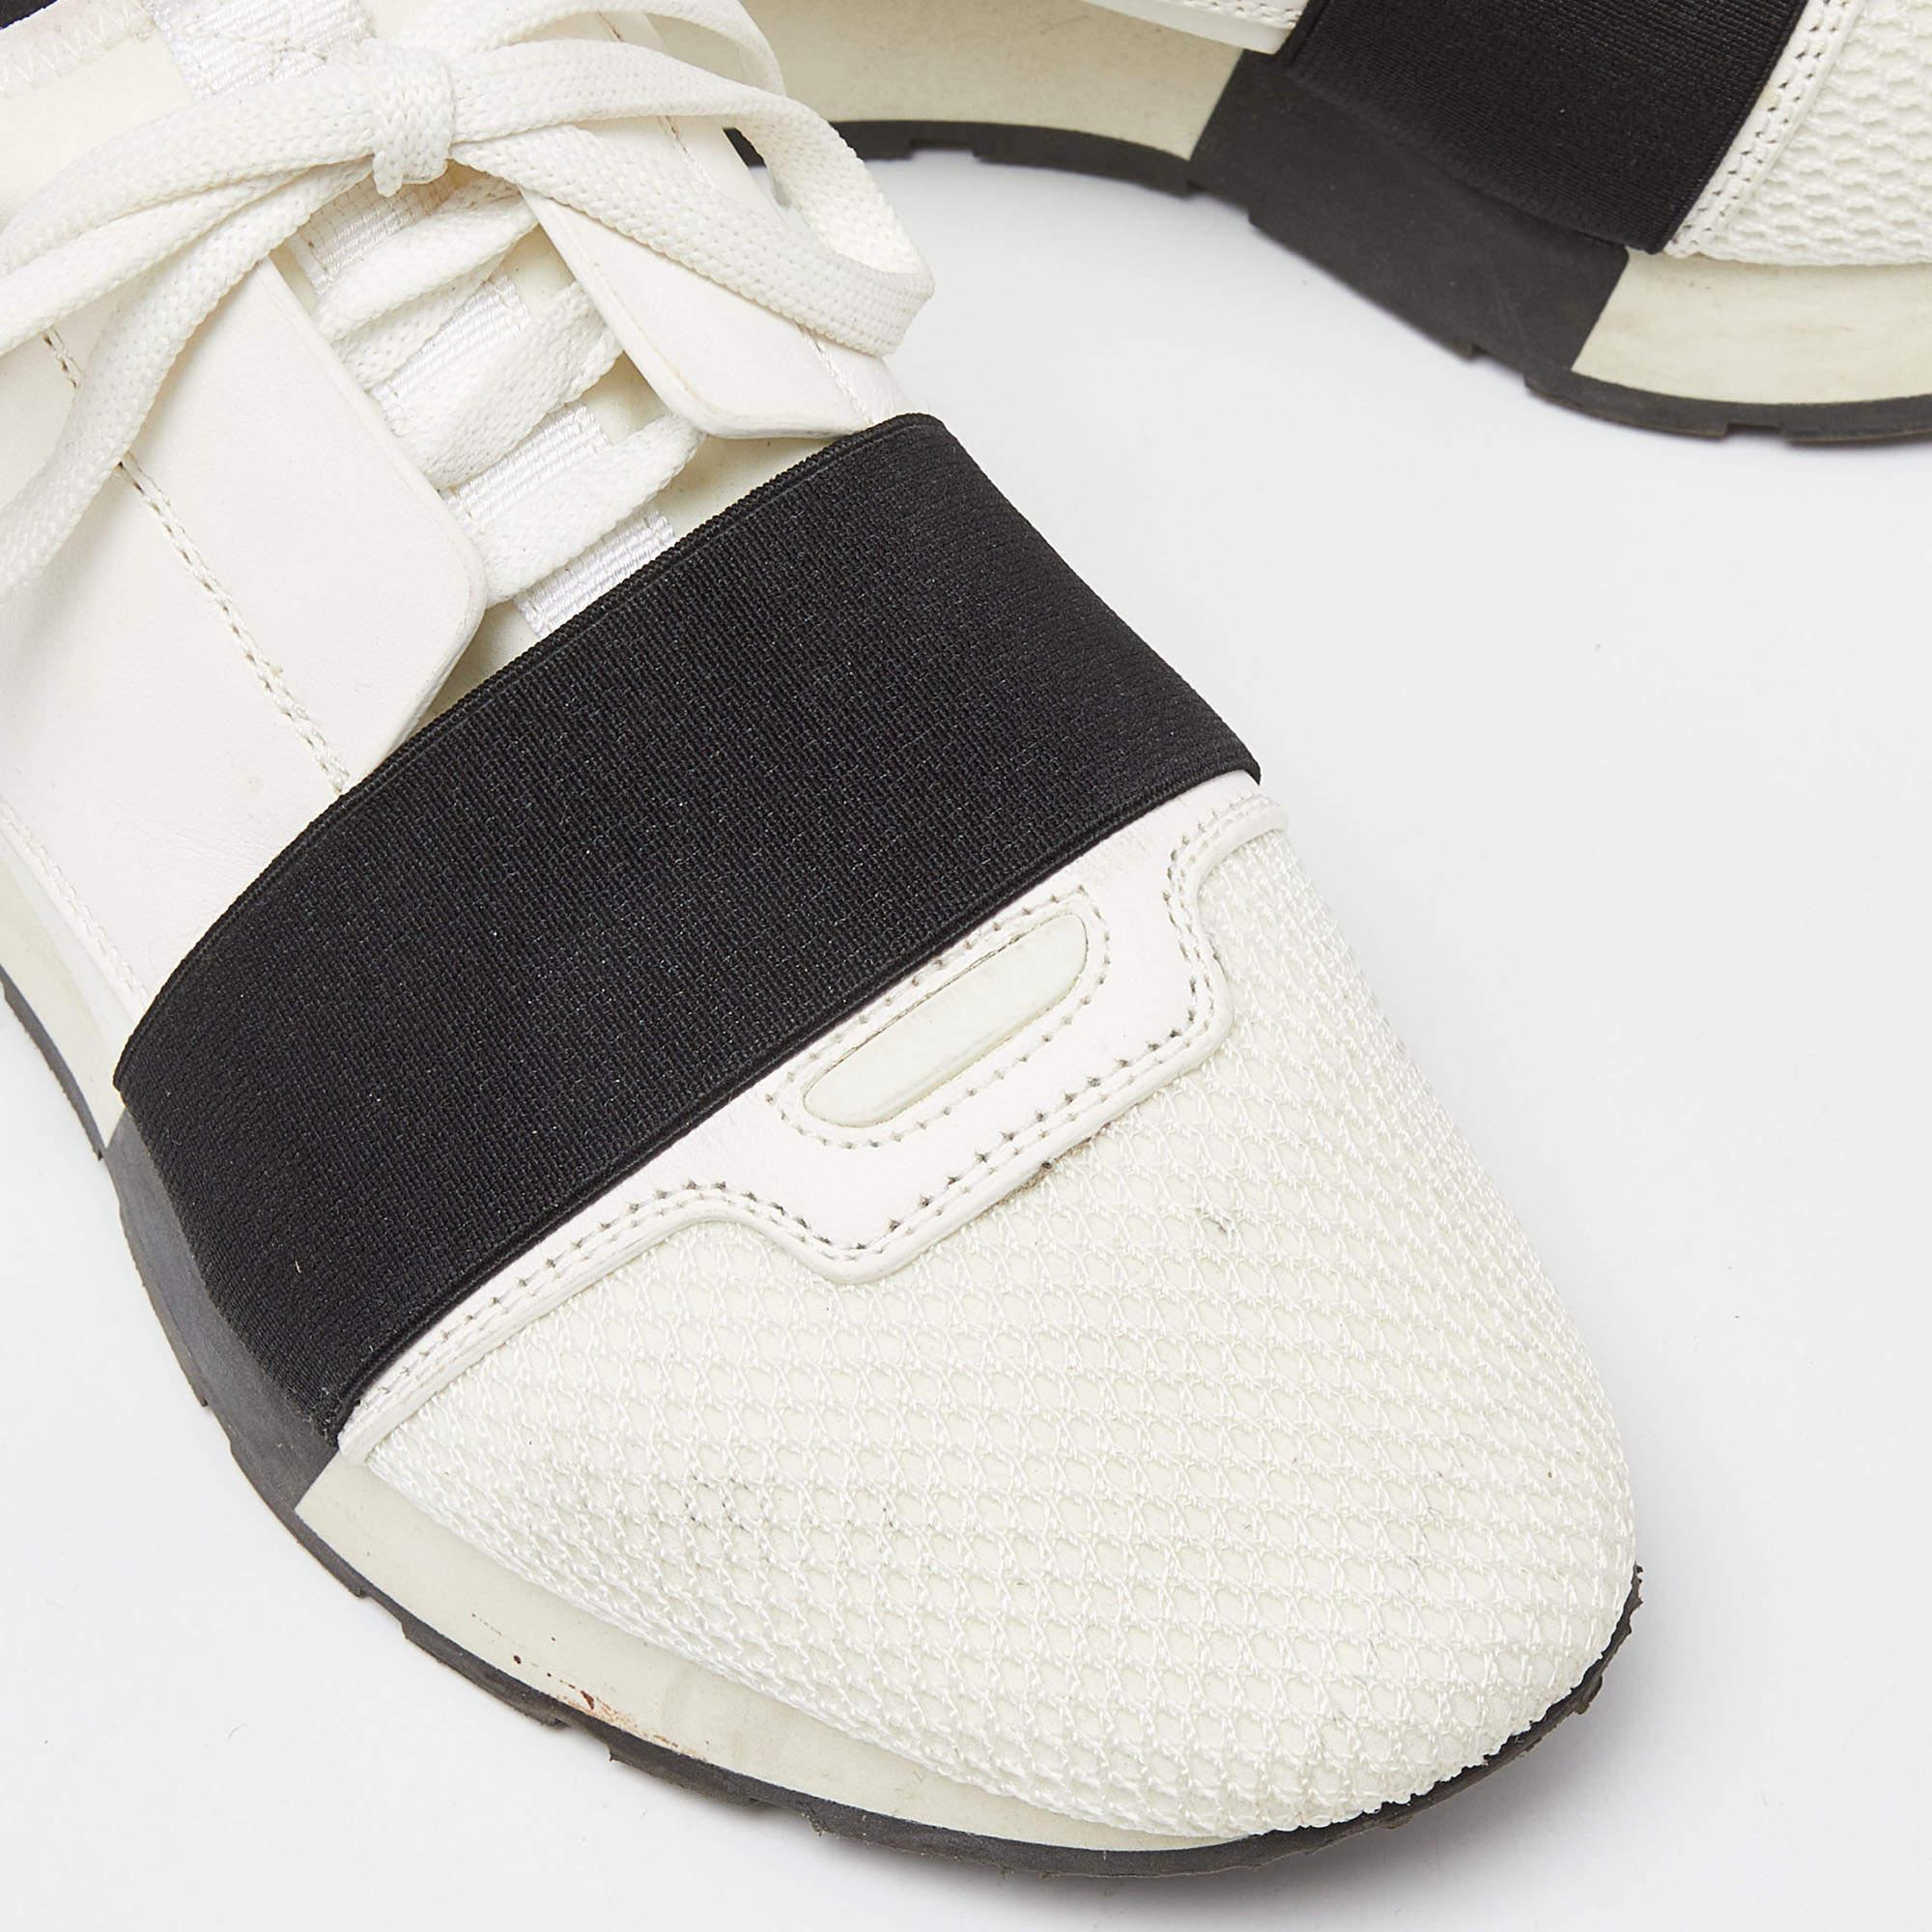 Die Race Runners Sneakers von Balenciaga sind Ihr neuester Begleiter. Das Äußere ist aus Leder und Mesh gefertigt, mit überzogenen Zehen, Riemchendetails an der Decksohle und Schnürverschlüssen. Dieses Paar ist mit einer ledergefütterten Innensohle